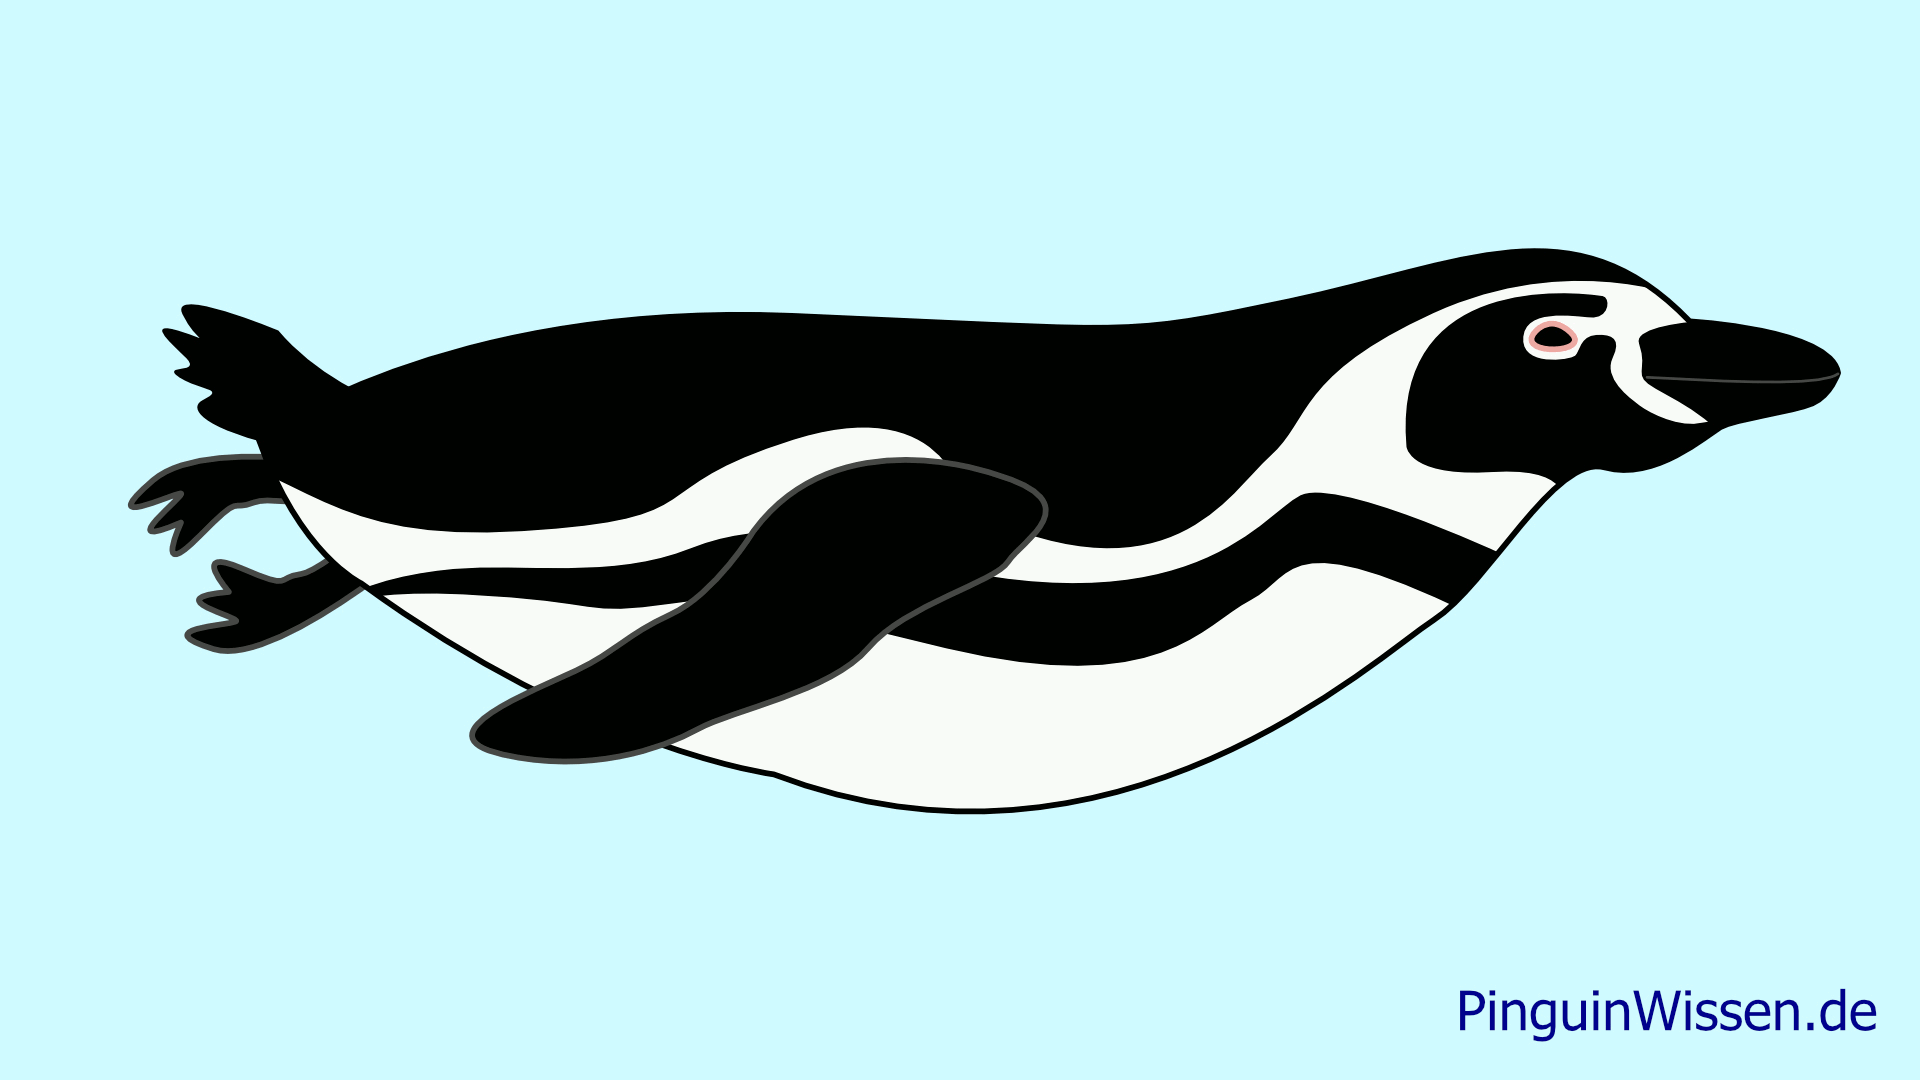 Die Animation zeigt die Bewegung einer Pinguinflosse im Querschnitt.